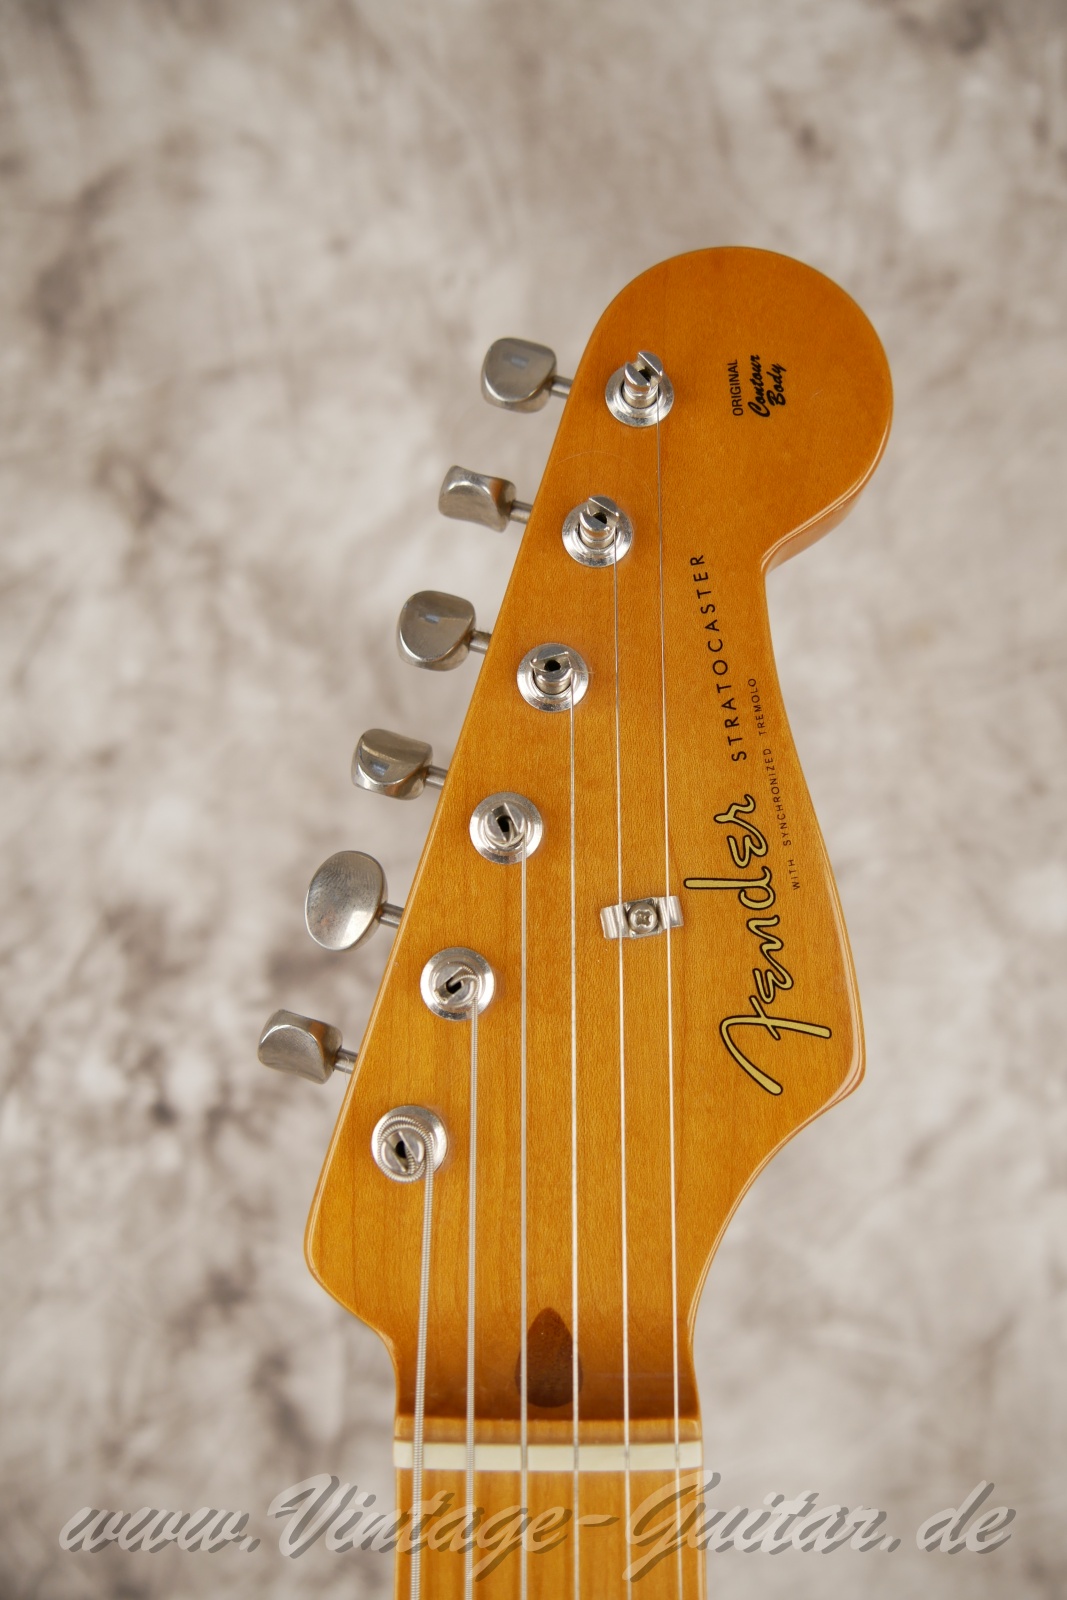 Fener-Stratocaster-Classic-player-series-50s-2007-sunburst-003.jpg